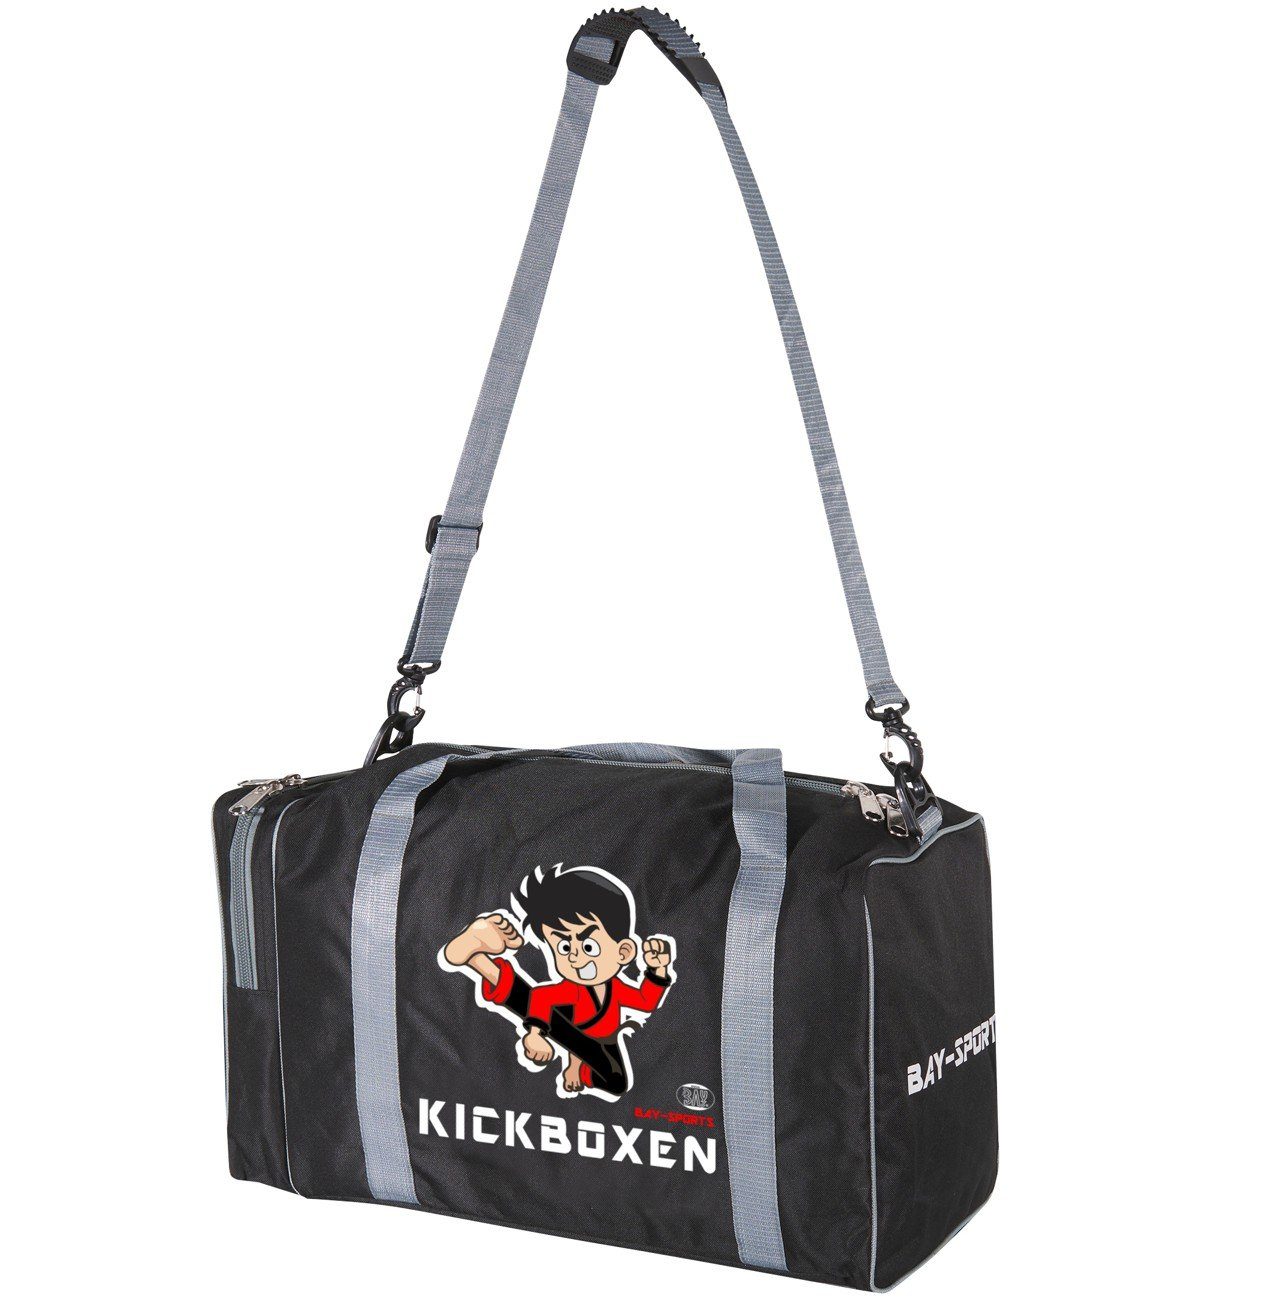 BAY-Sports Sporttasche Kickboxen Kinder cm 50 Sporttasche für schwarz/grau